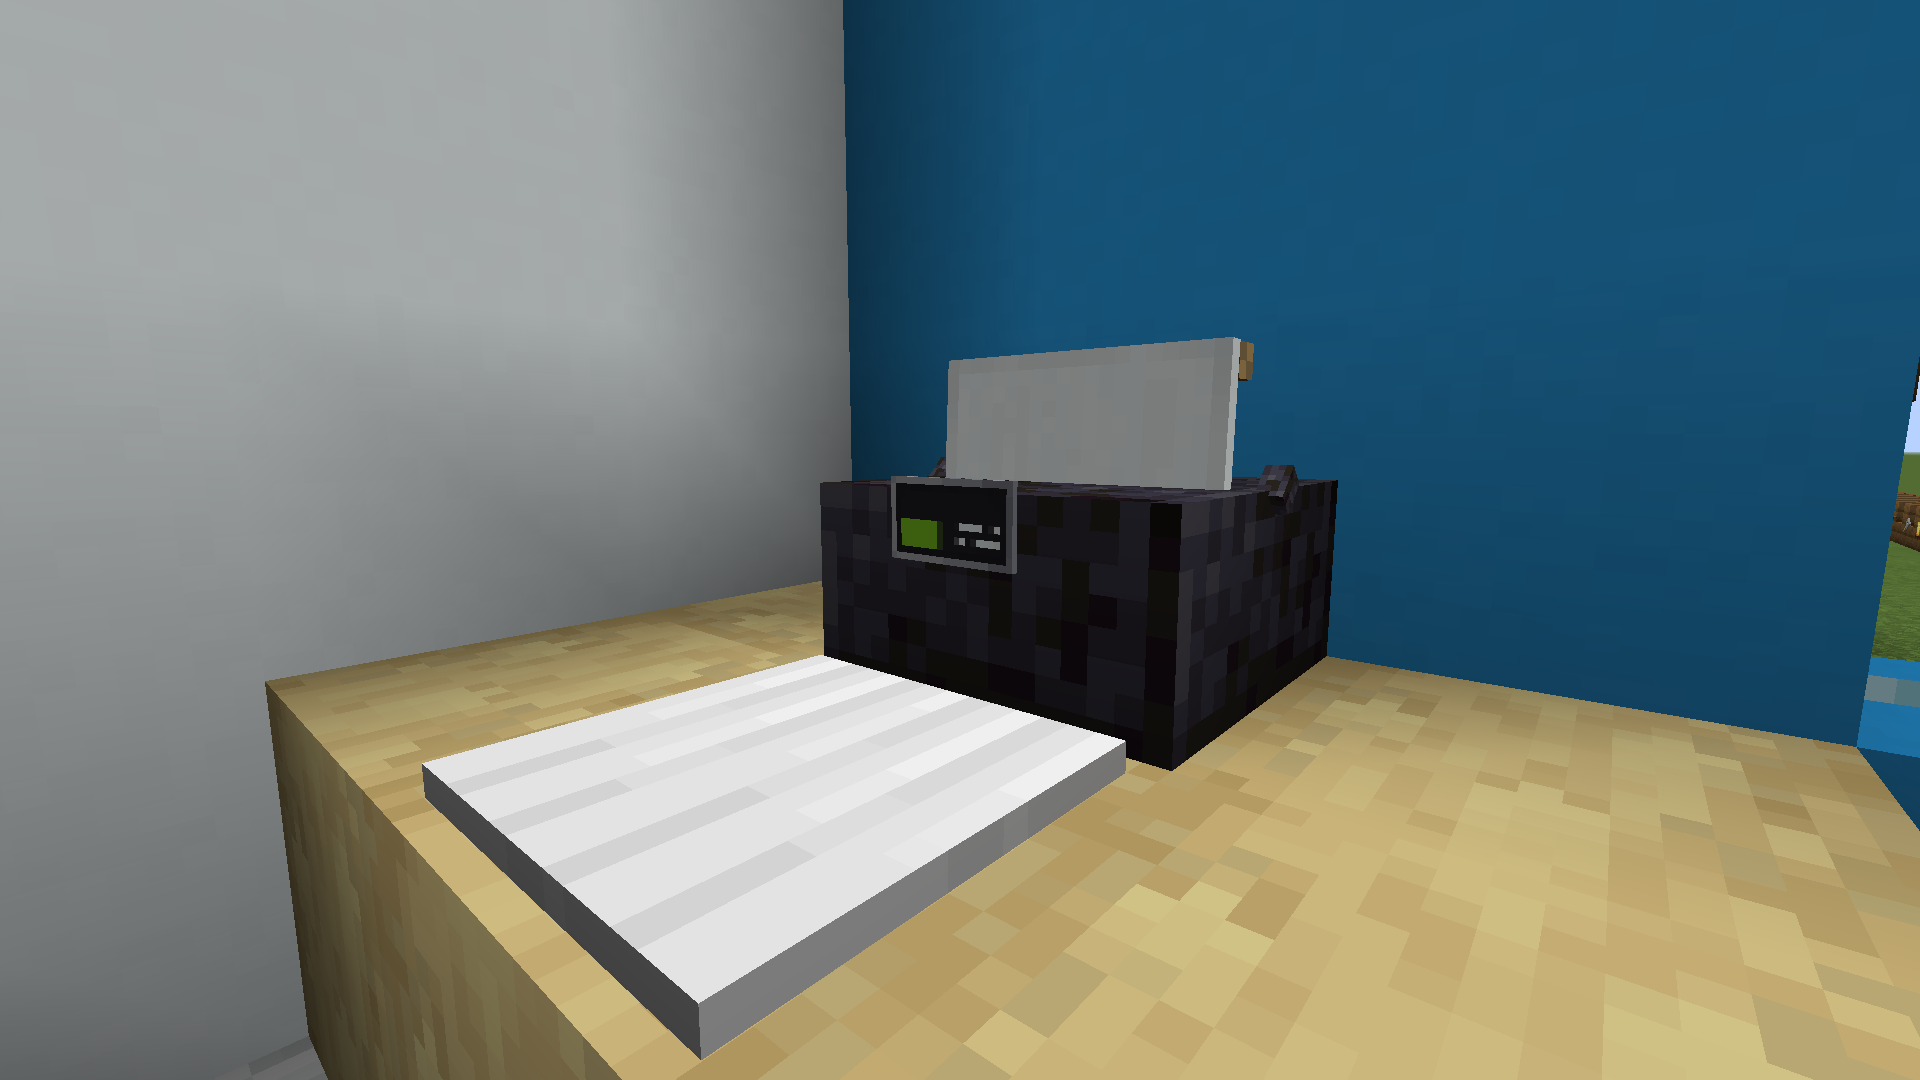 Невидимая рамка майнкрафт. Невидимая рамка в МАЙНКРАФТЕ. Майнкрафт для принтера. Принтер Minecraft. Классный офисный стол в Майне.